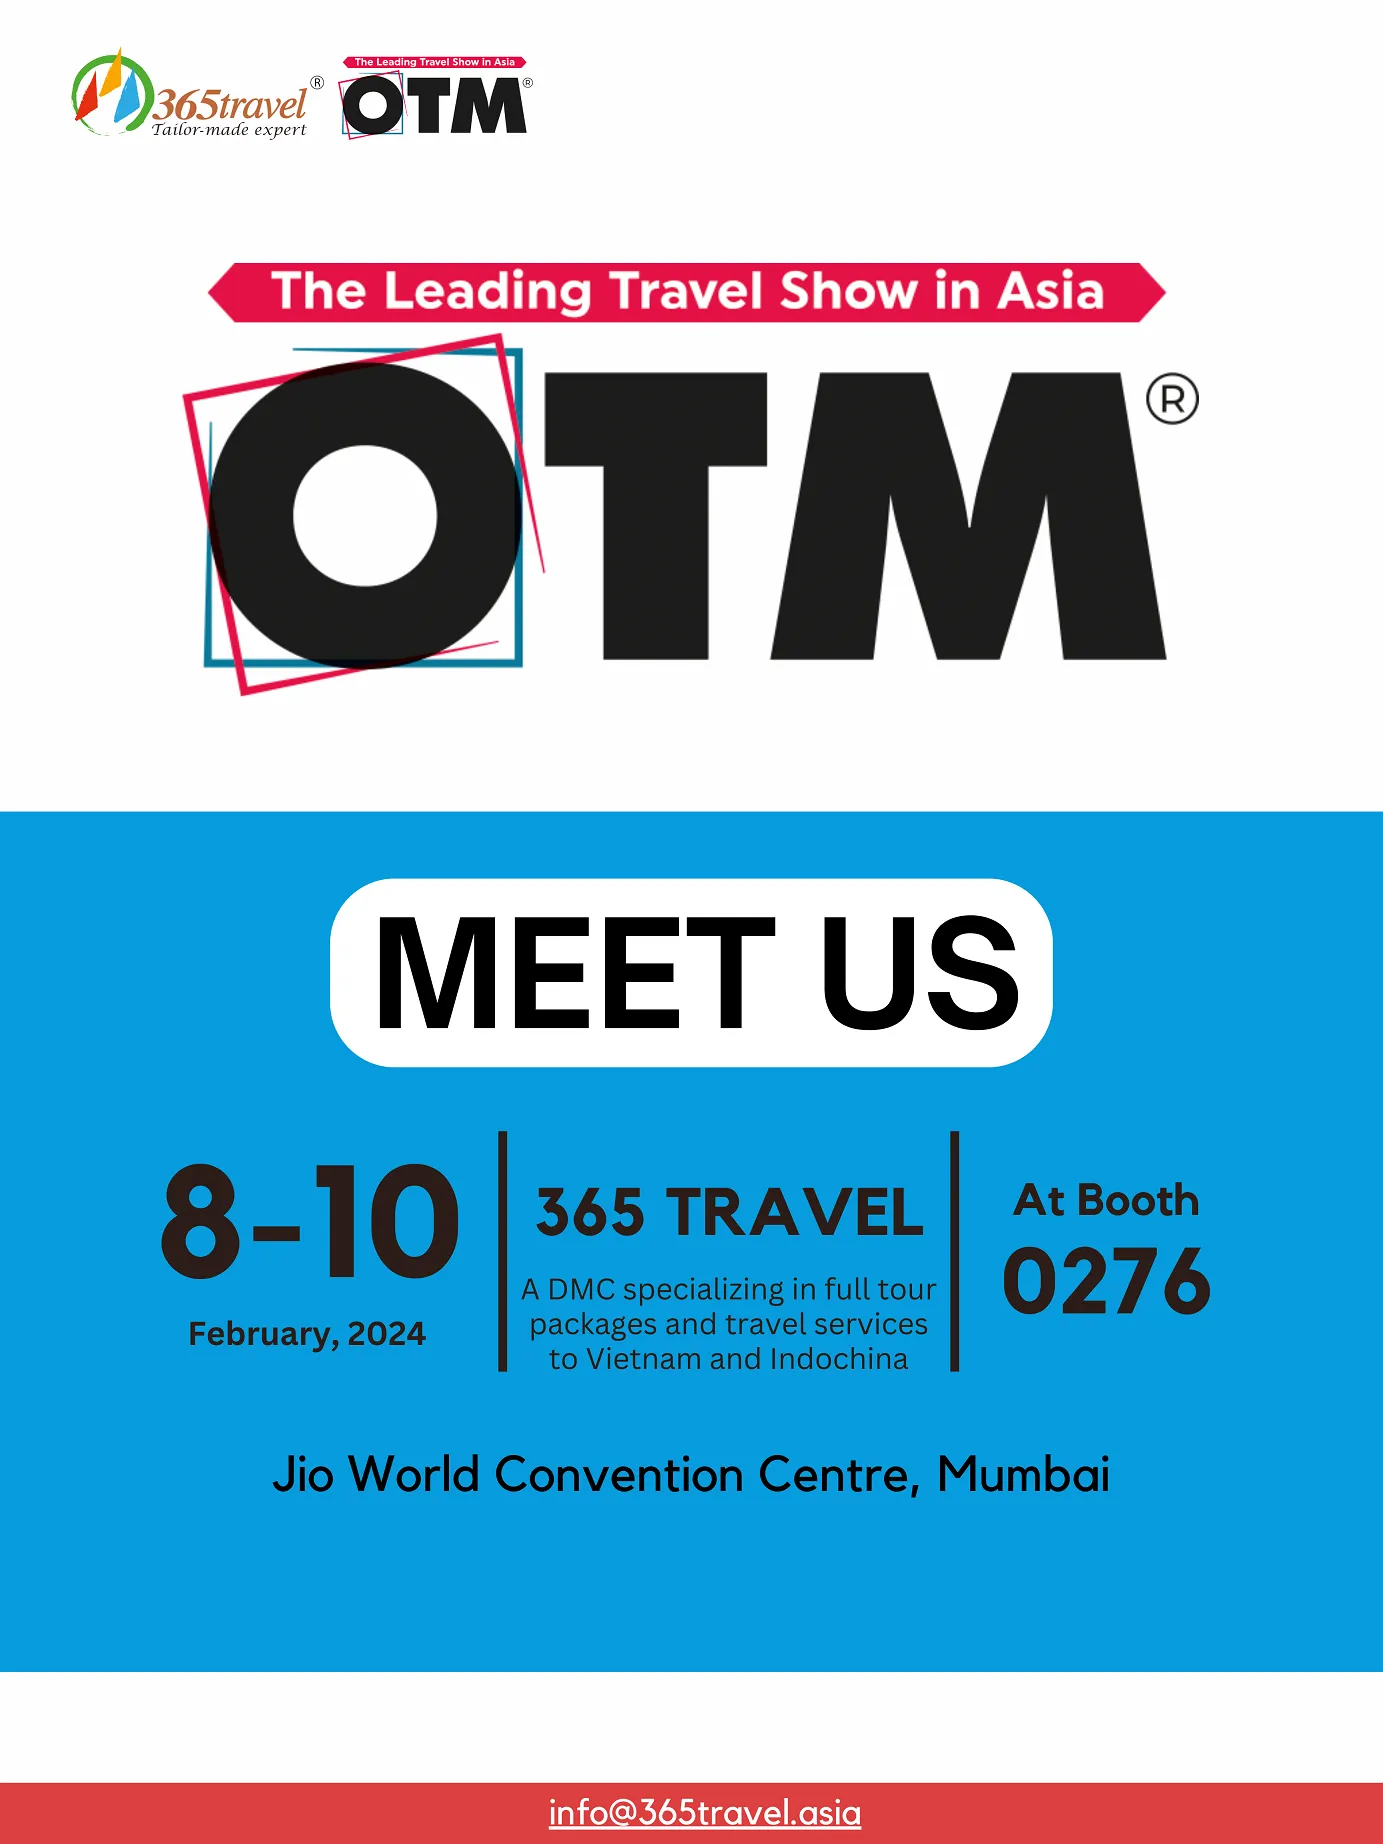 365 Travel will attend OTM Mumbai 2024